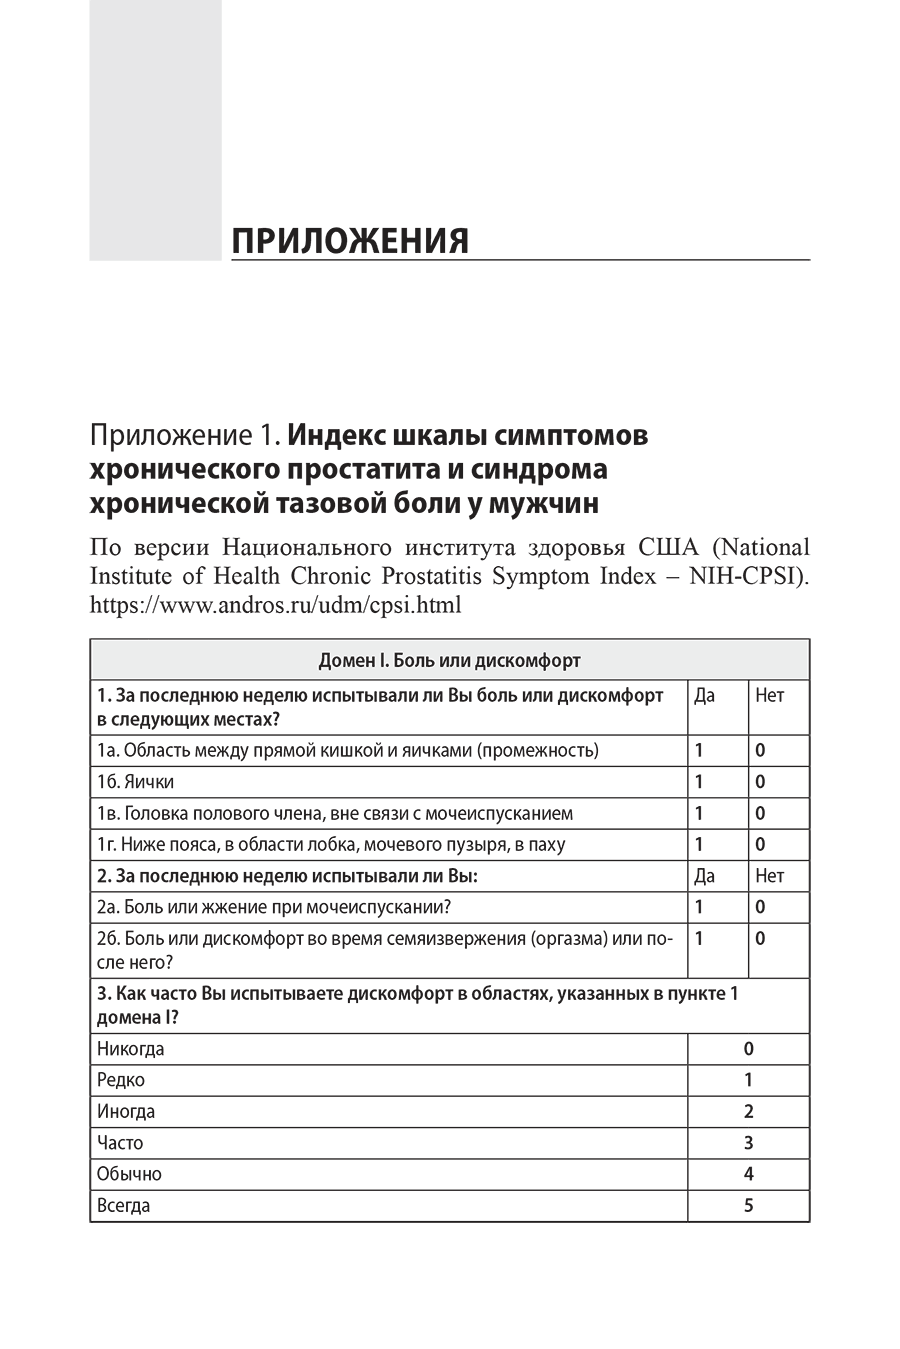 Приложение 1. Индекс шкалы симптомов хронического простатита и синдрома хронической тазовой боли у мужчин